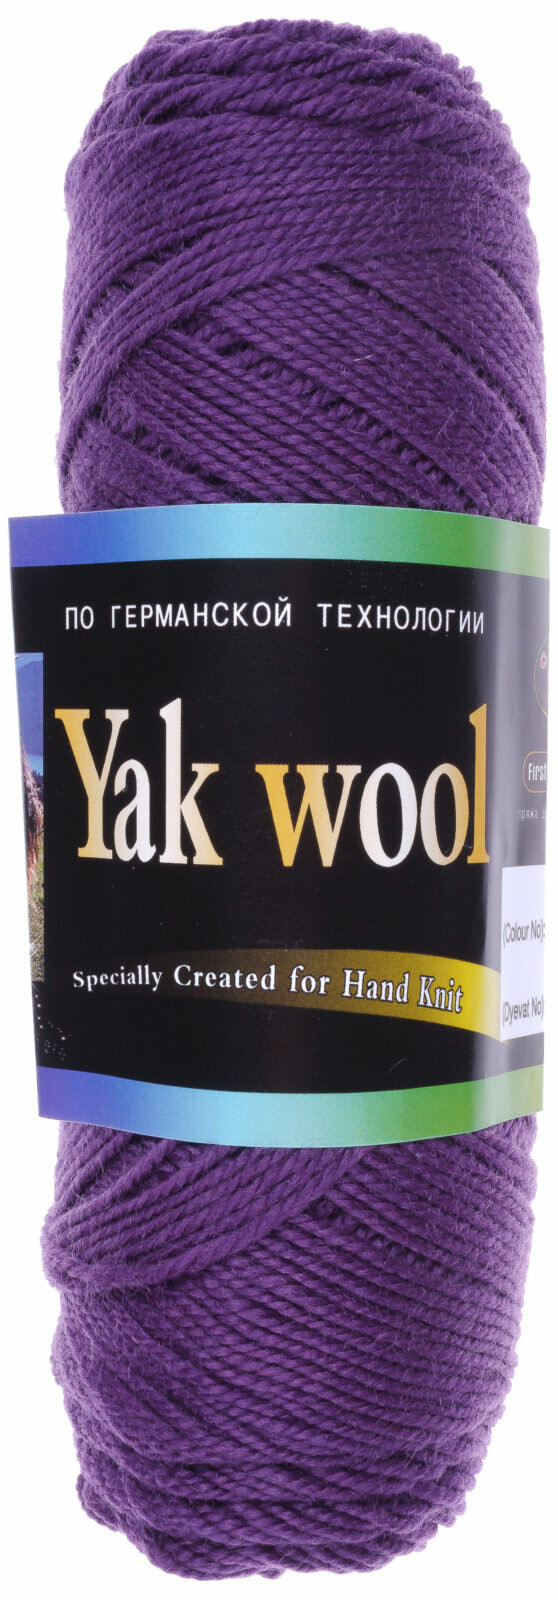 Пряжа Color City Yak wool 60%пух яка/20%мериносовая шерсть/20%акрил 430м 100г 1шт